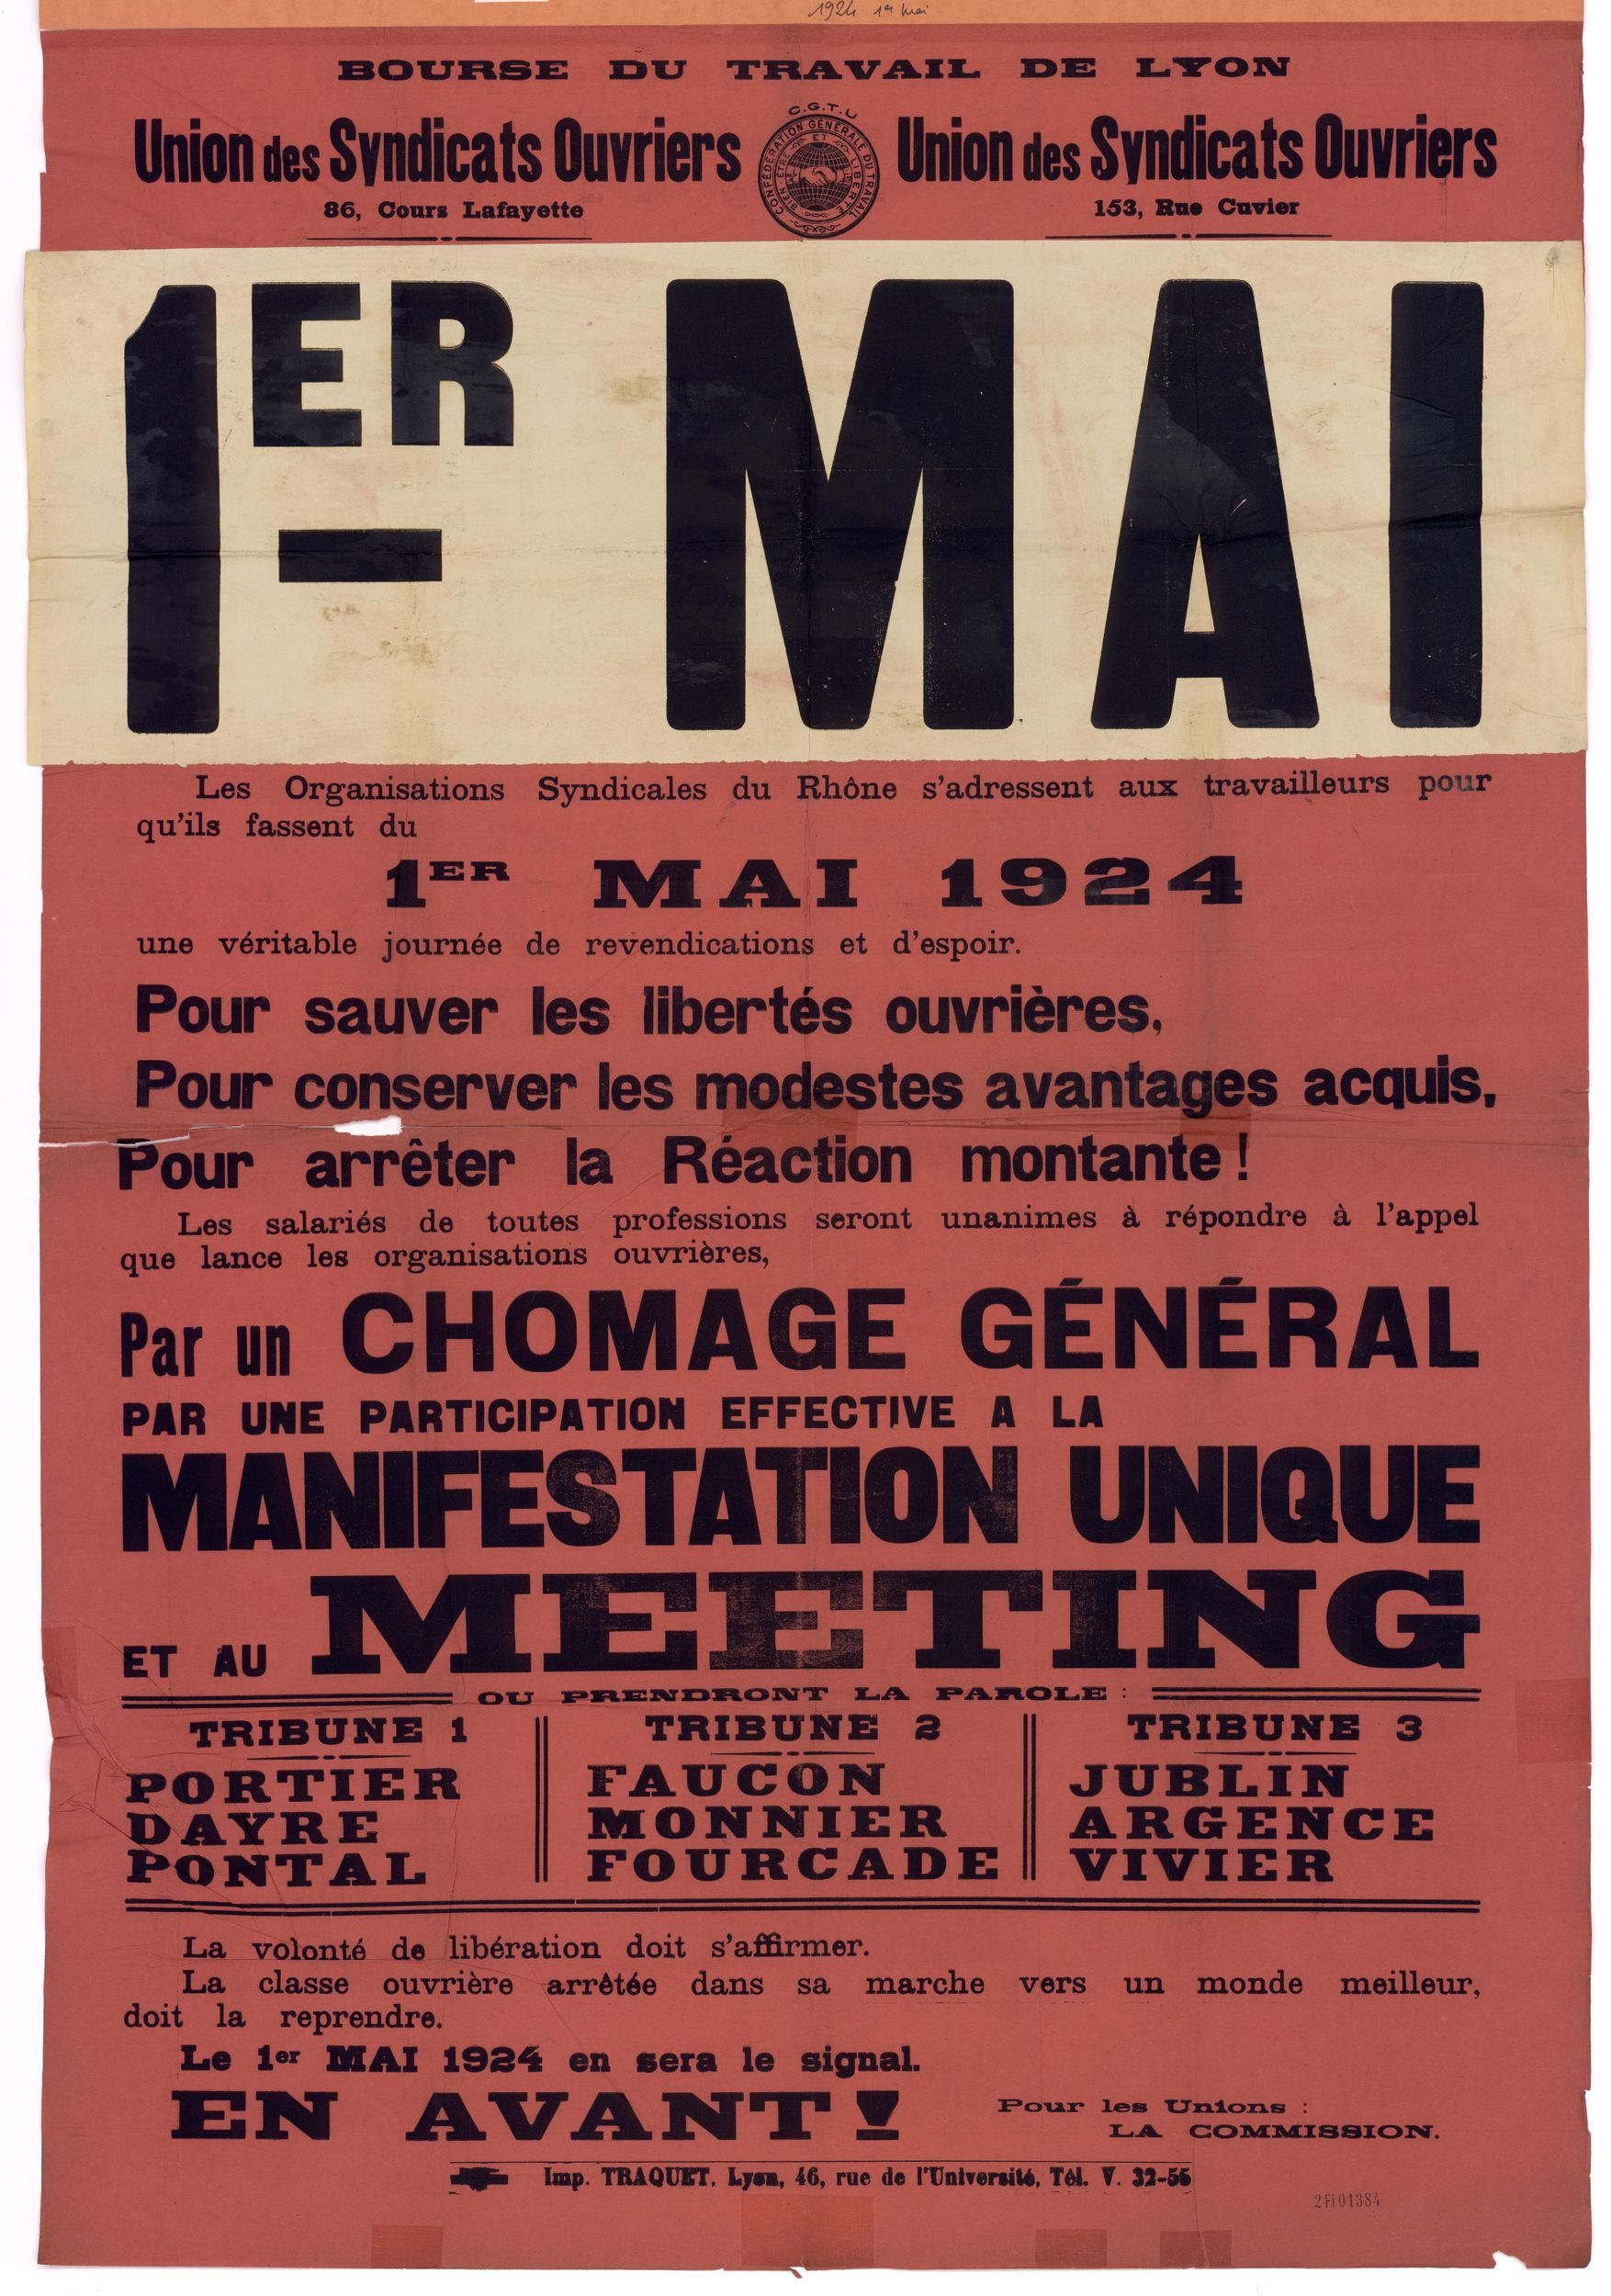 Union des syndicats ouvriers - 1er mai 1924, manifestation unique : affiche syndicale (01/05/1924, cote : 2FI/1384)